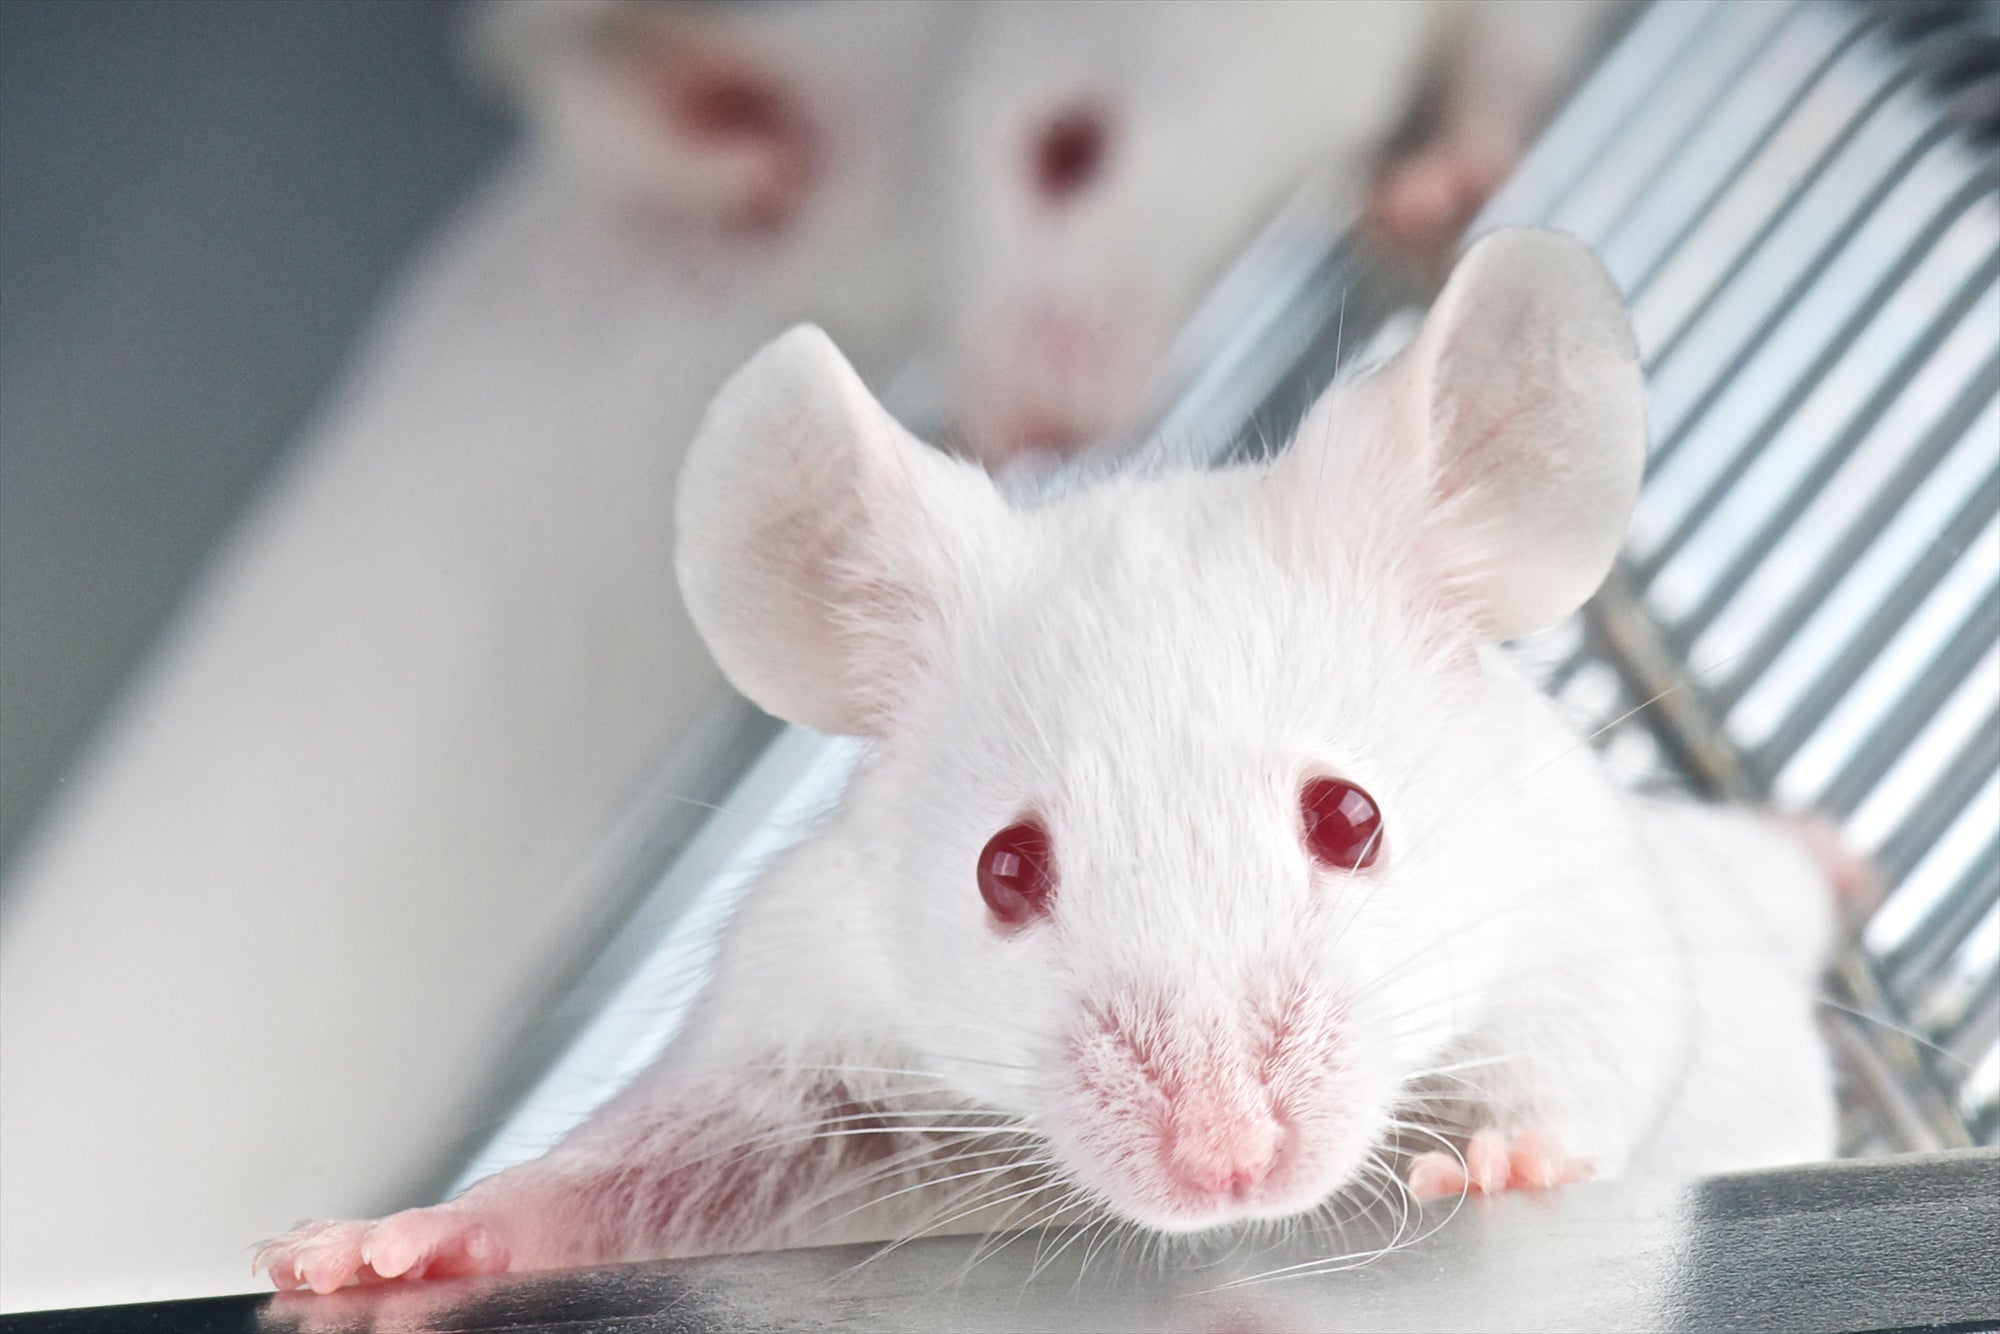 White laboratory mice in a cage